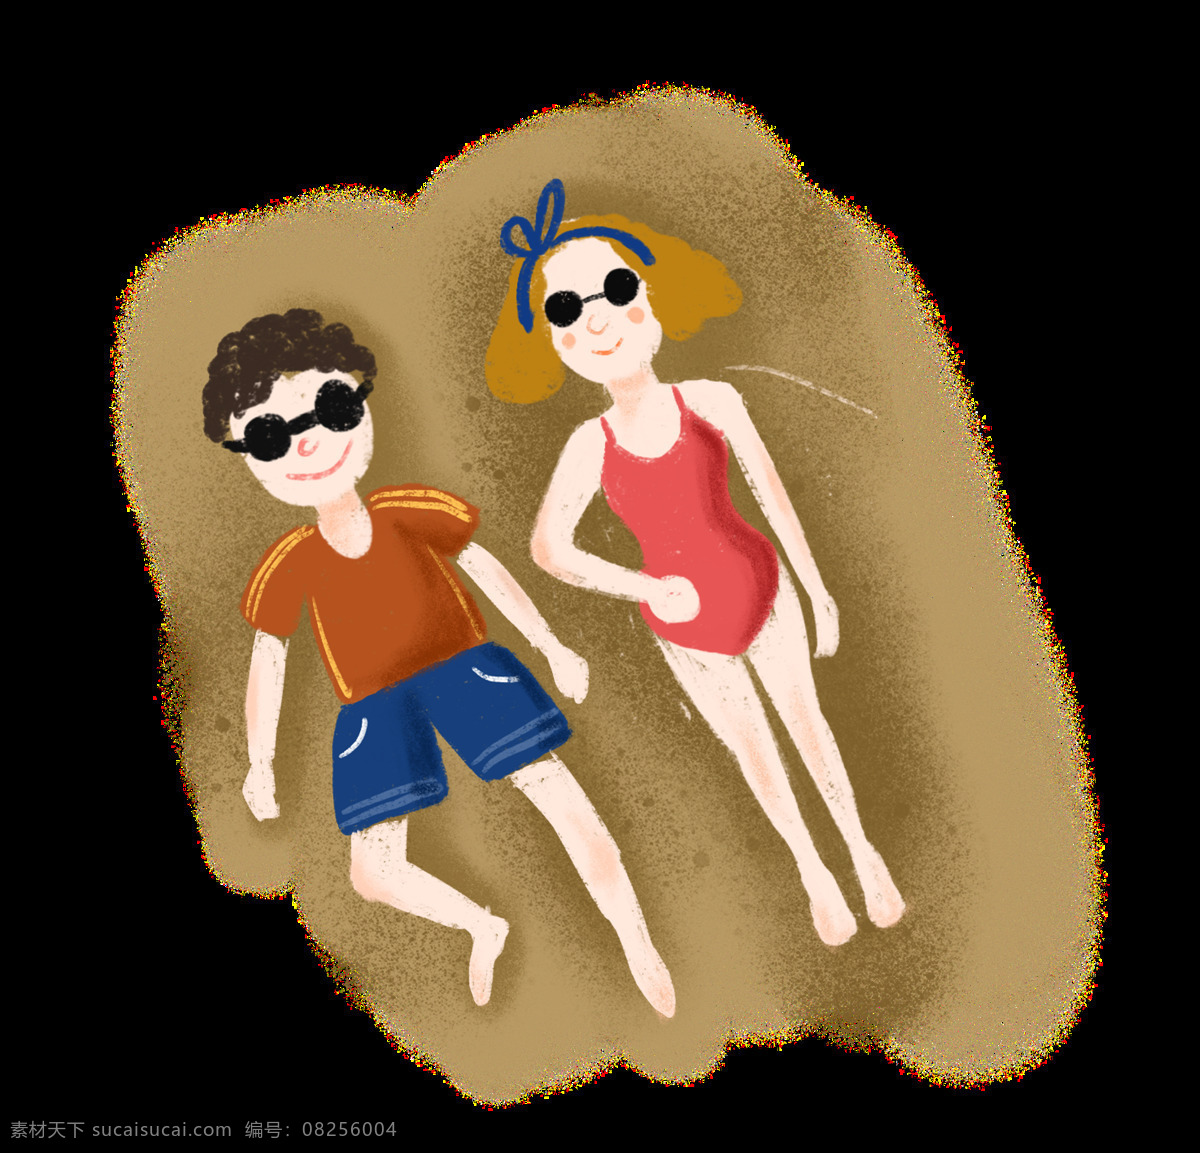 夏日 沙滩 情侣 免 抠 图 夏天 度假 海边 游泳 户外 休闲 娱乐 户外生活 微信 淘宝 泳衣 防晒